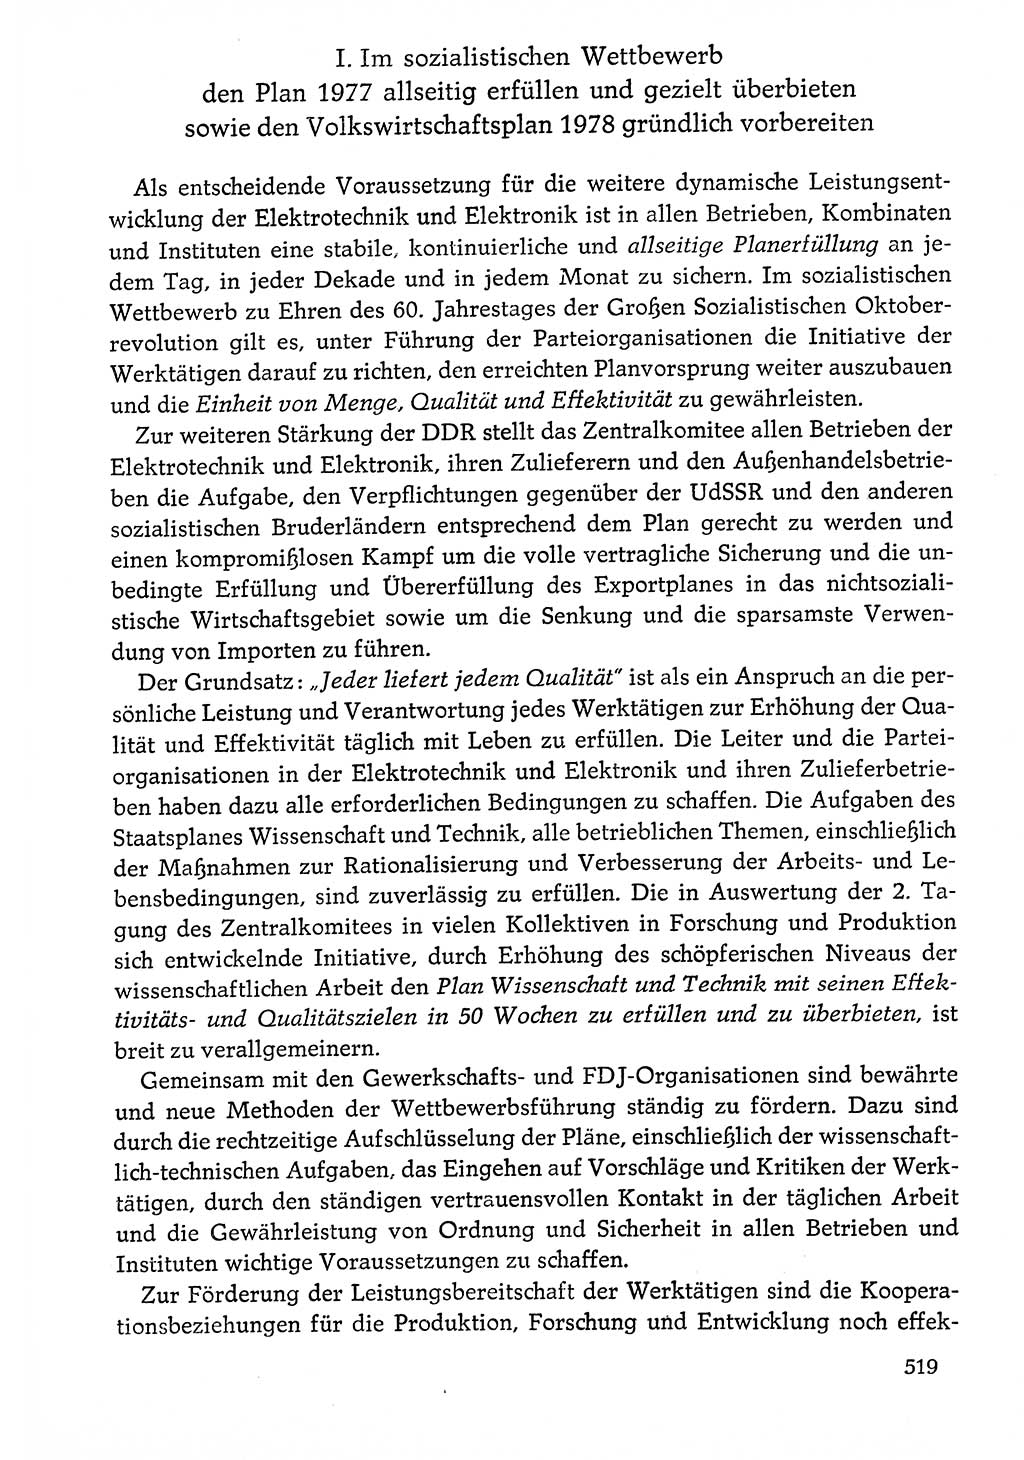 Dokumente der Sozialistischen Einheitspartei Deutschlands (SED) [Deutsche Demokratische Republik (DDR)] 1976-1977, Seite 519 (Dok. SED DDR 1976-1977, S. 519)